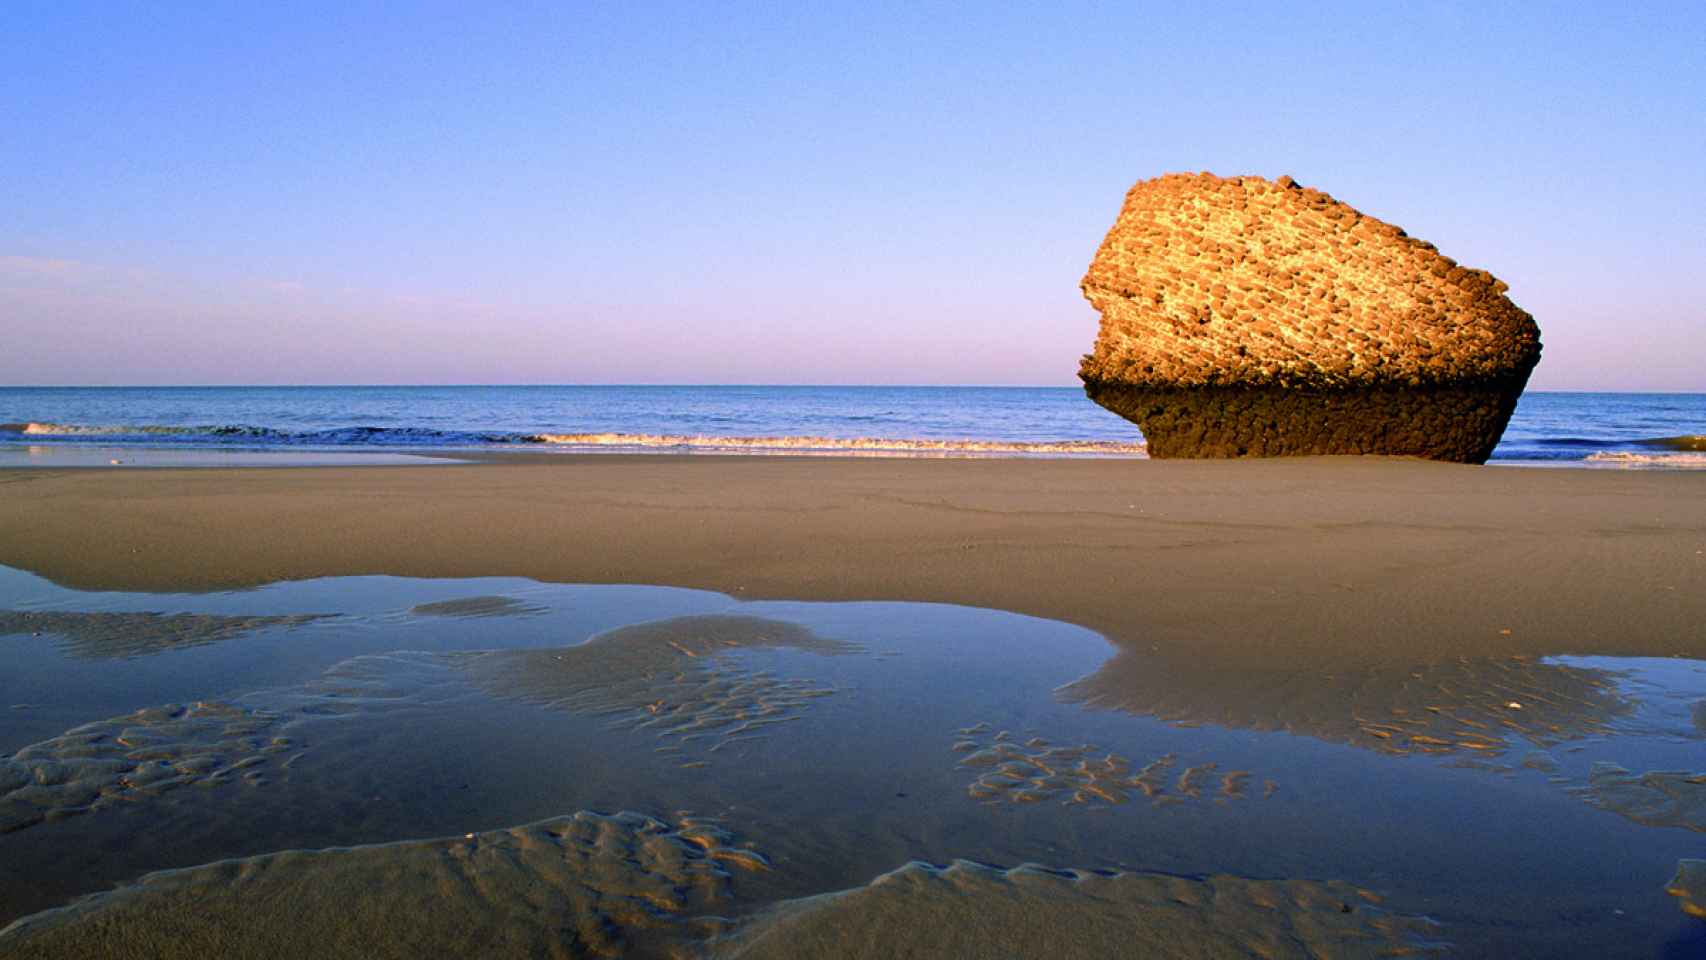 Playa de Matalascañas